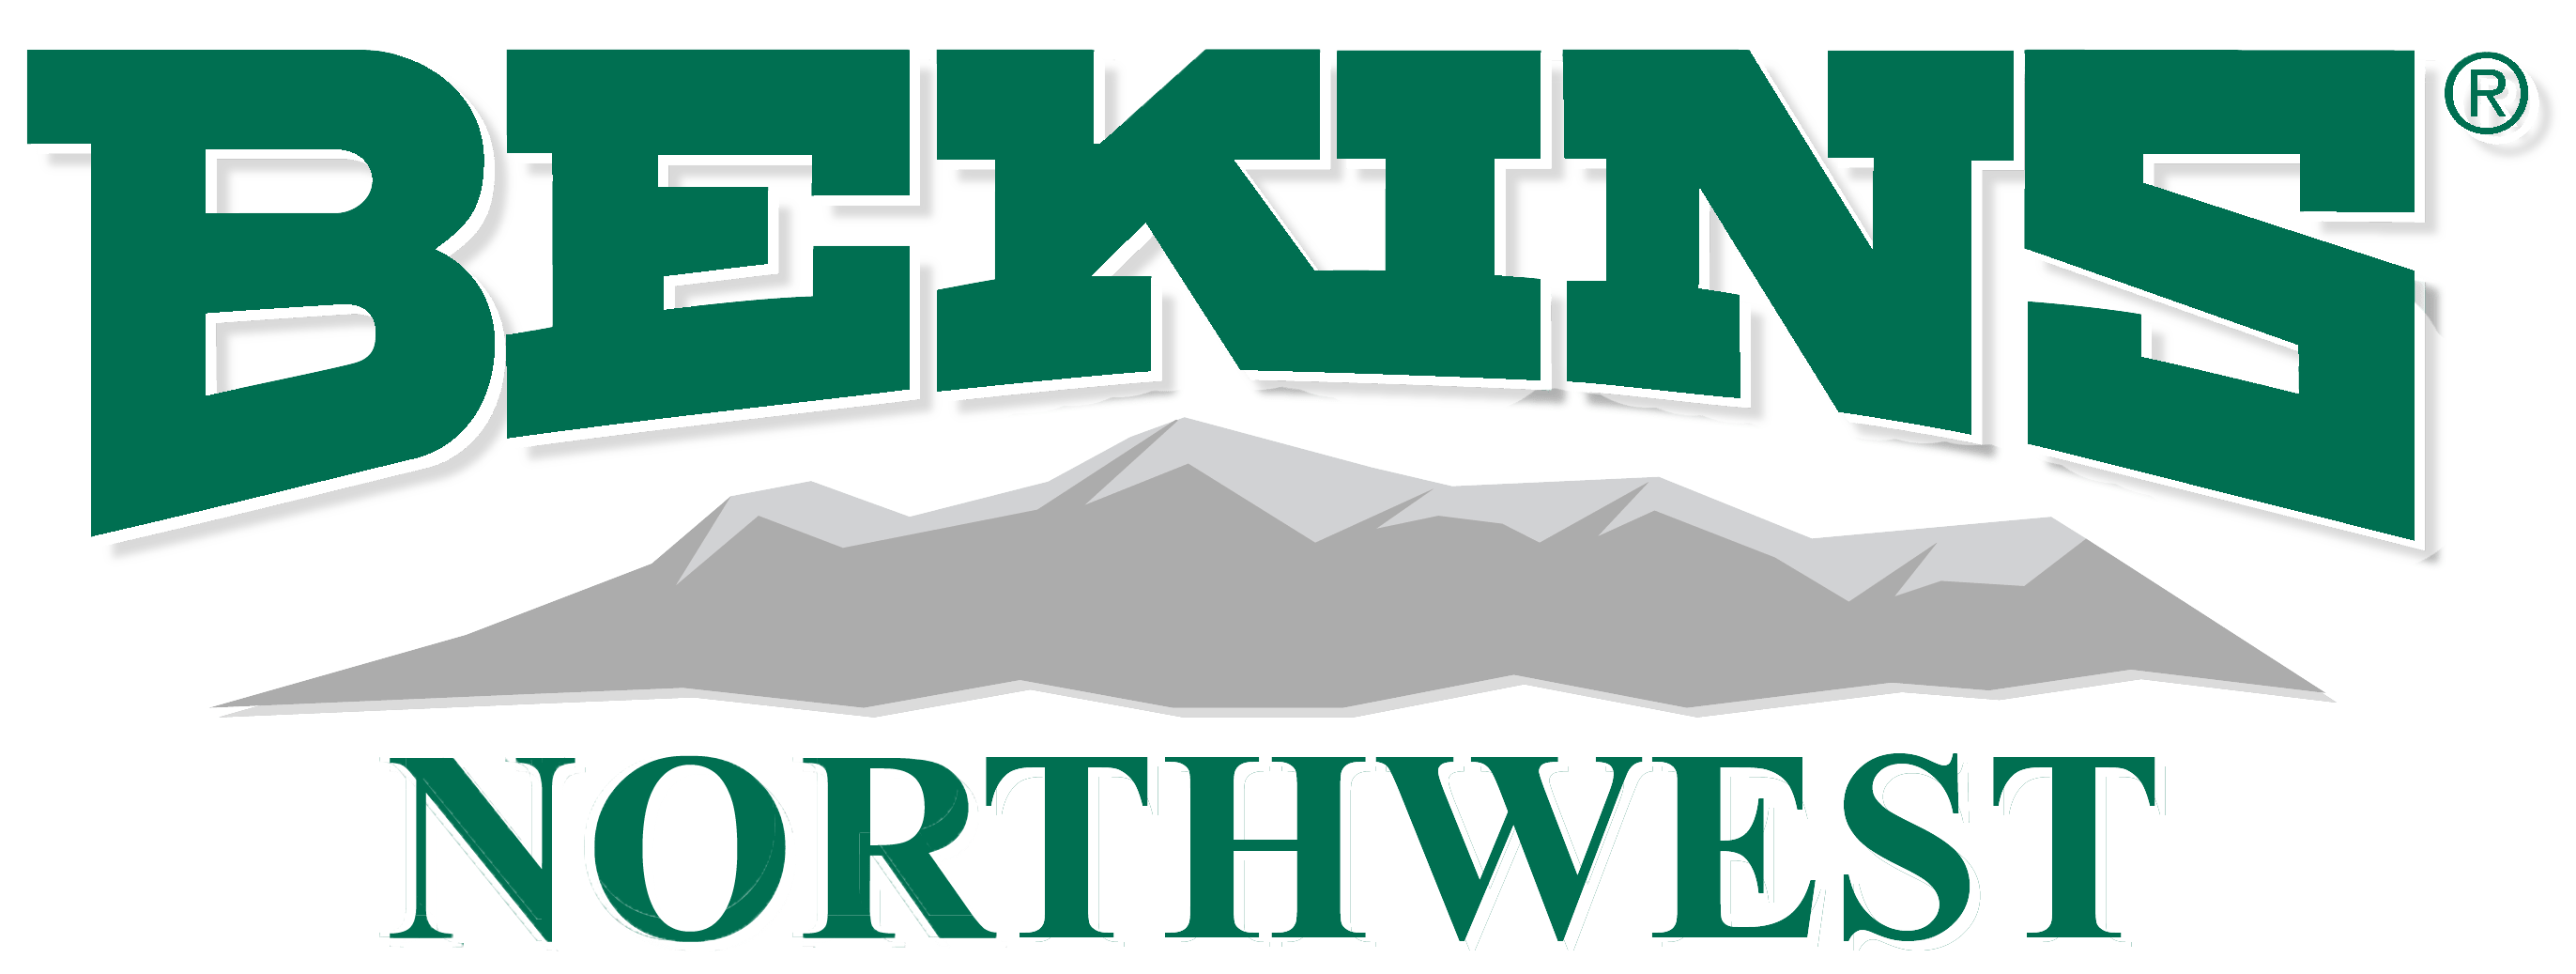 Bekins Northwest Moving Company Logo